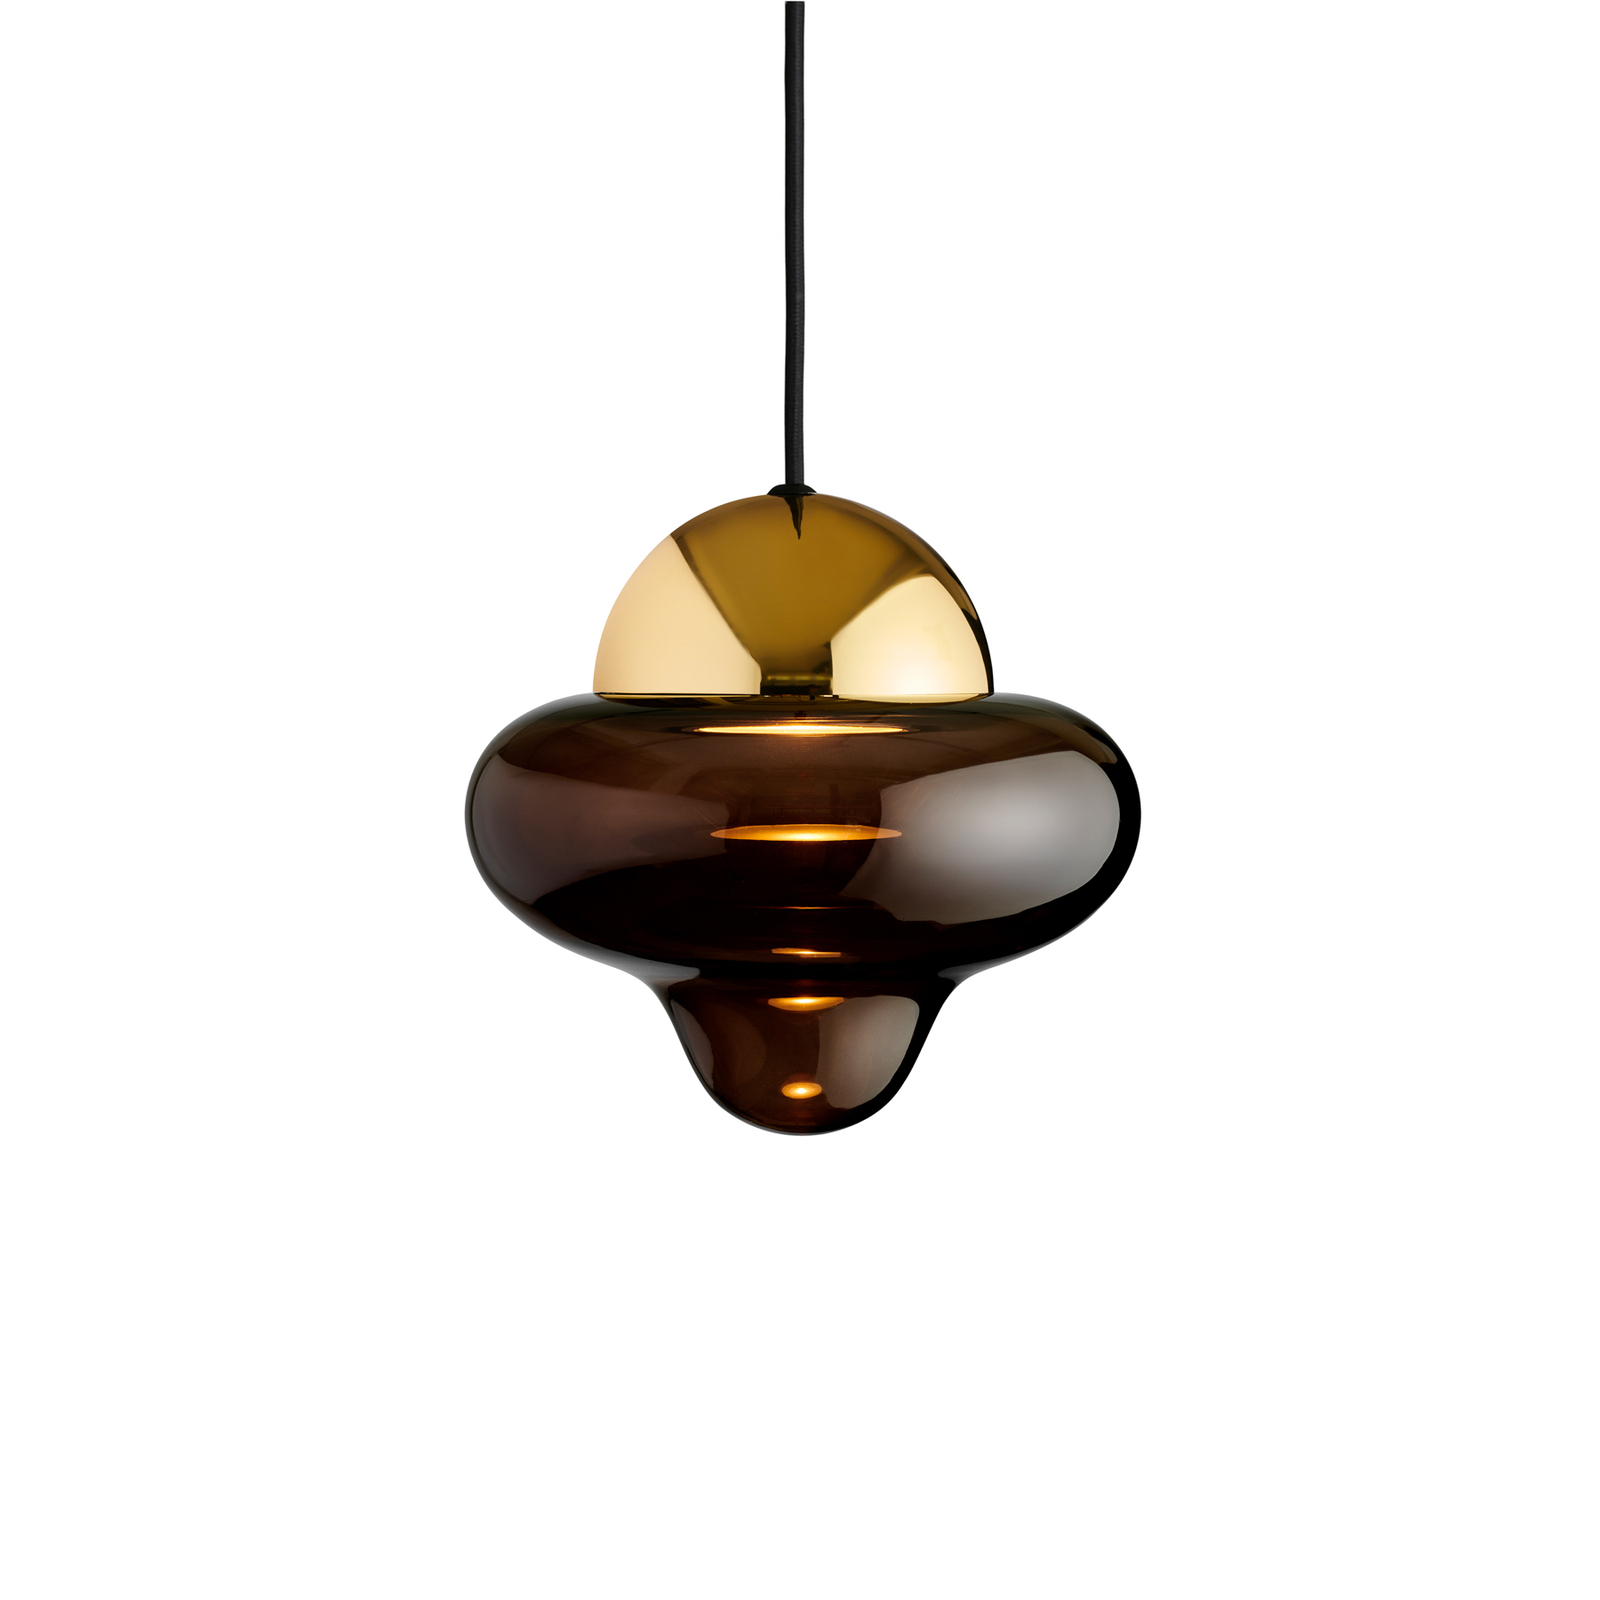 LED-Hängeleuchte Nutty, braun / goldfarben, Ø 18,5 cm, Glas